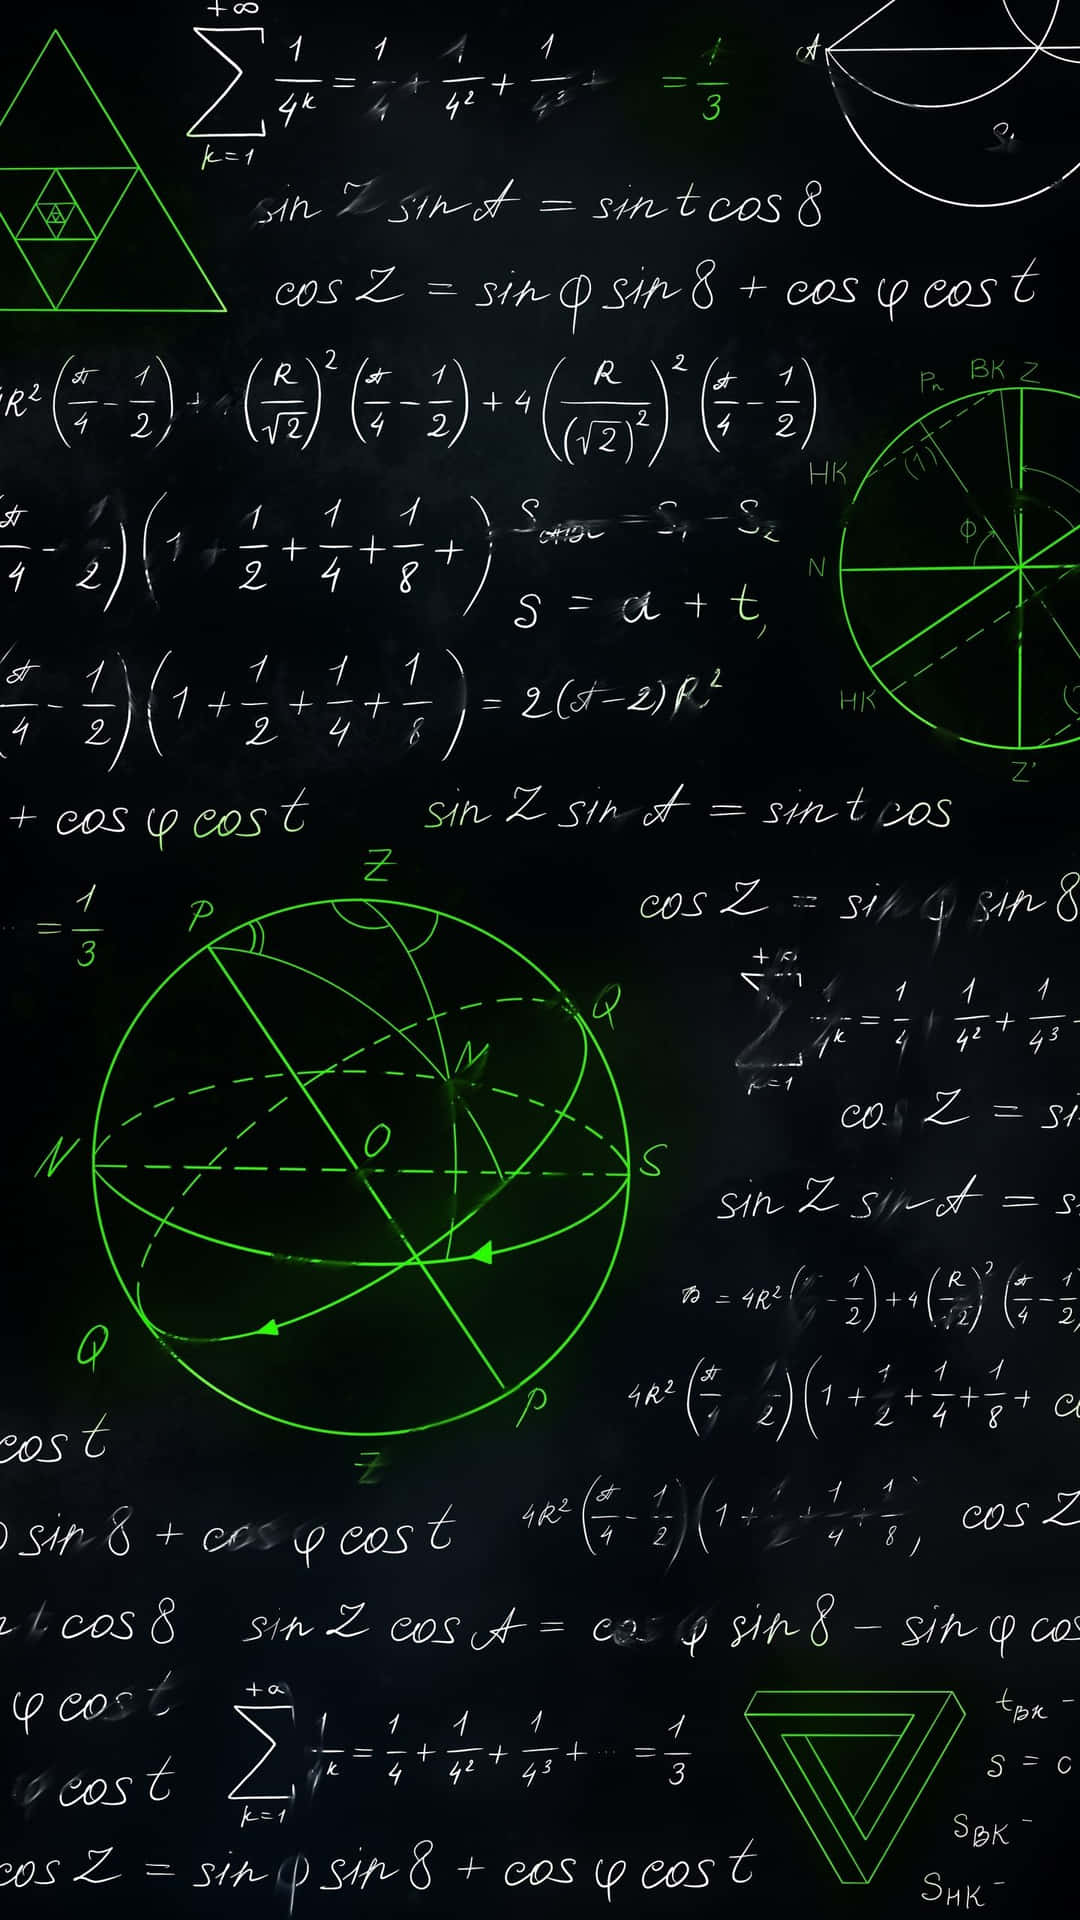 Entrigonometrisk Funktion Mod En Højere Forståelse Af Matematik